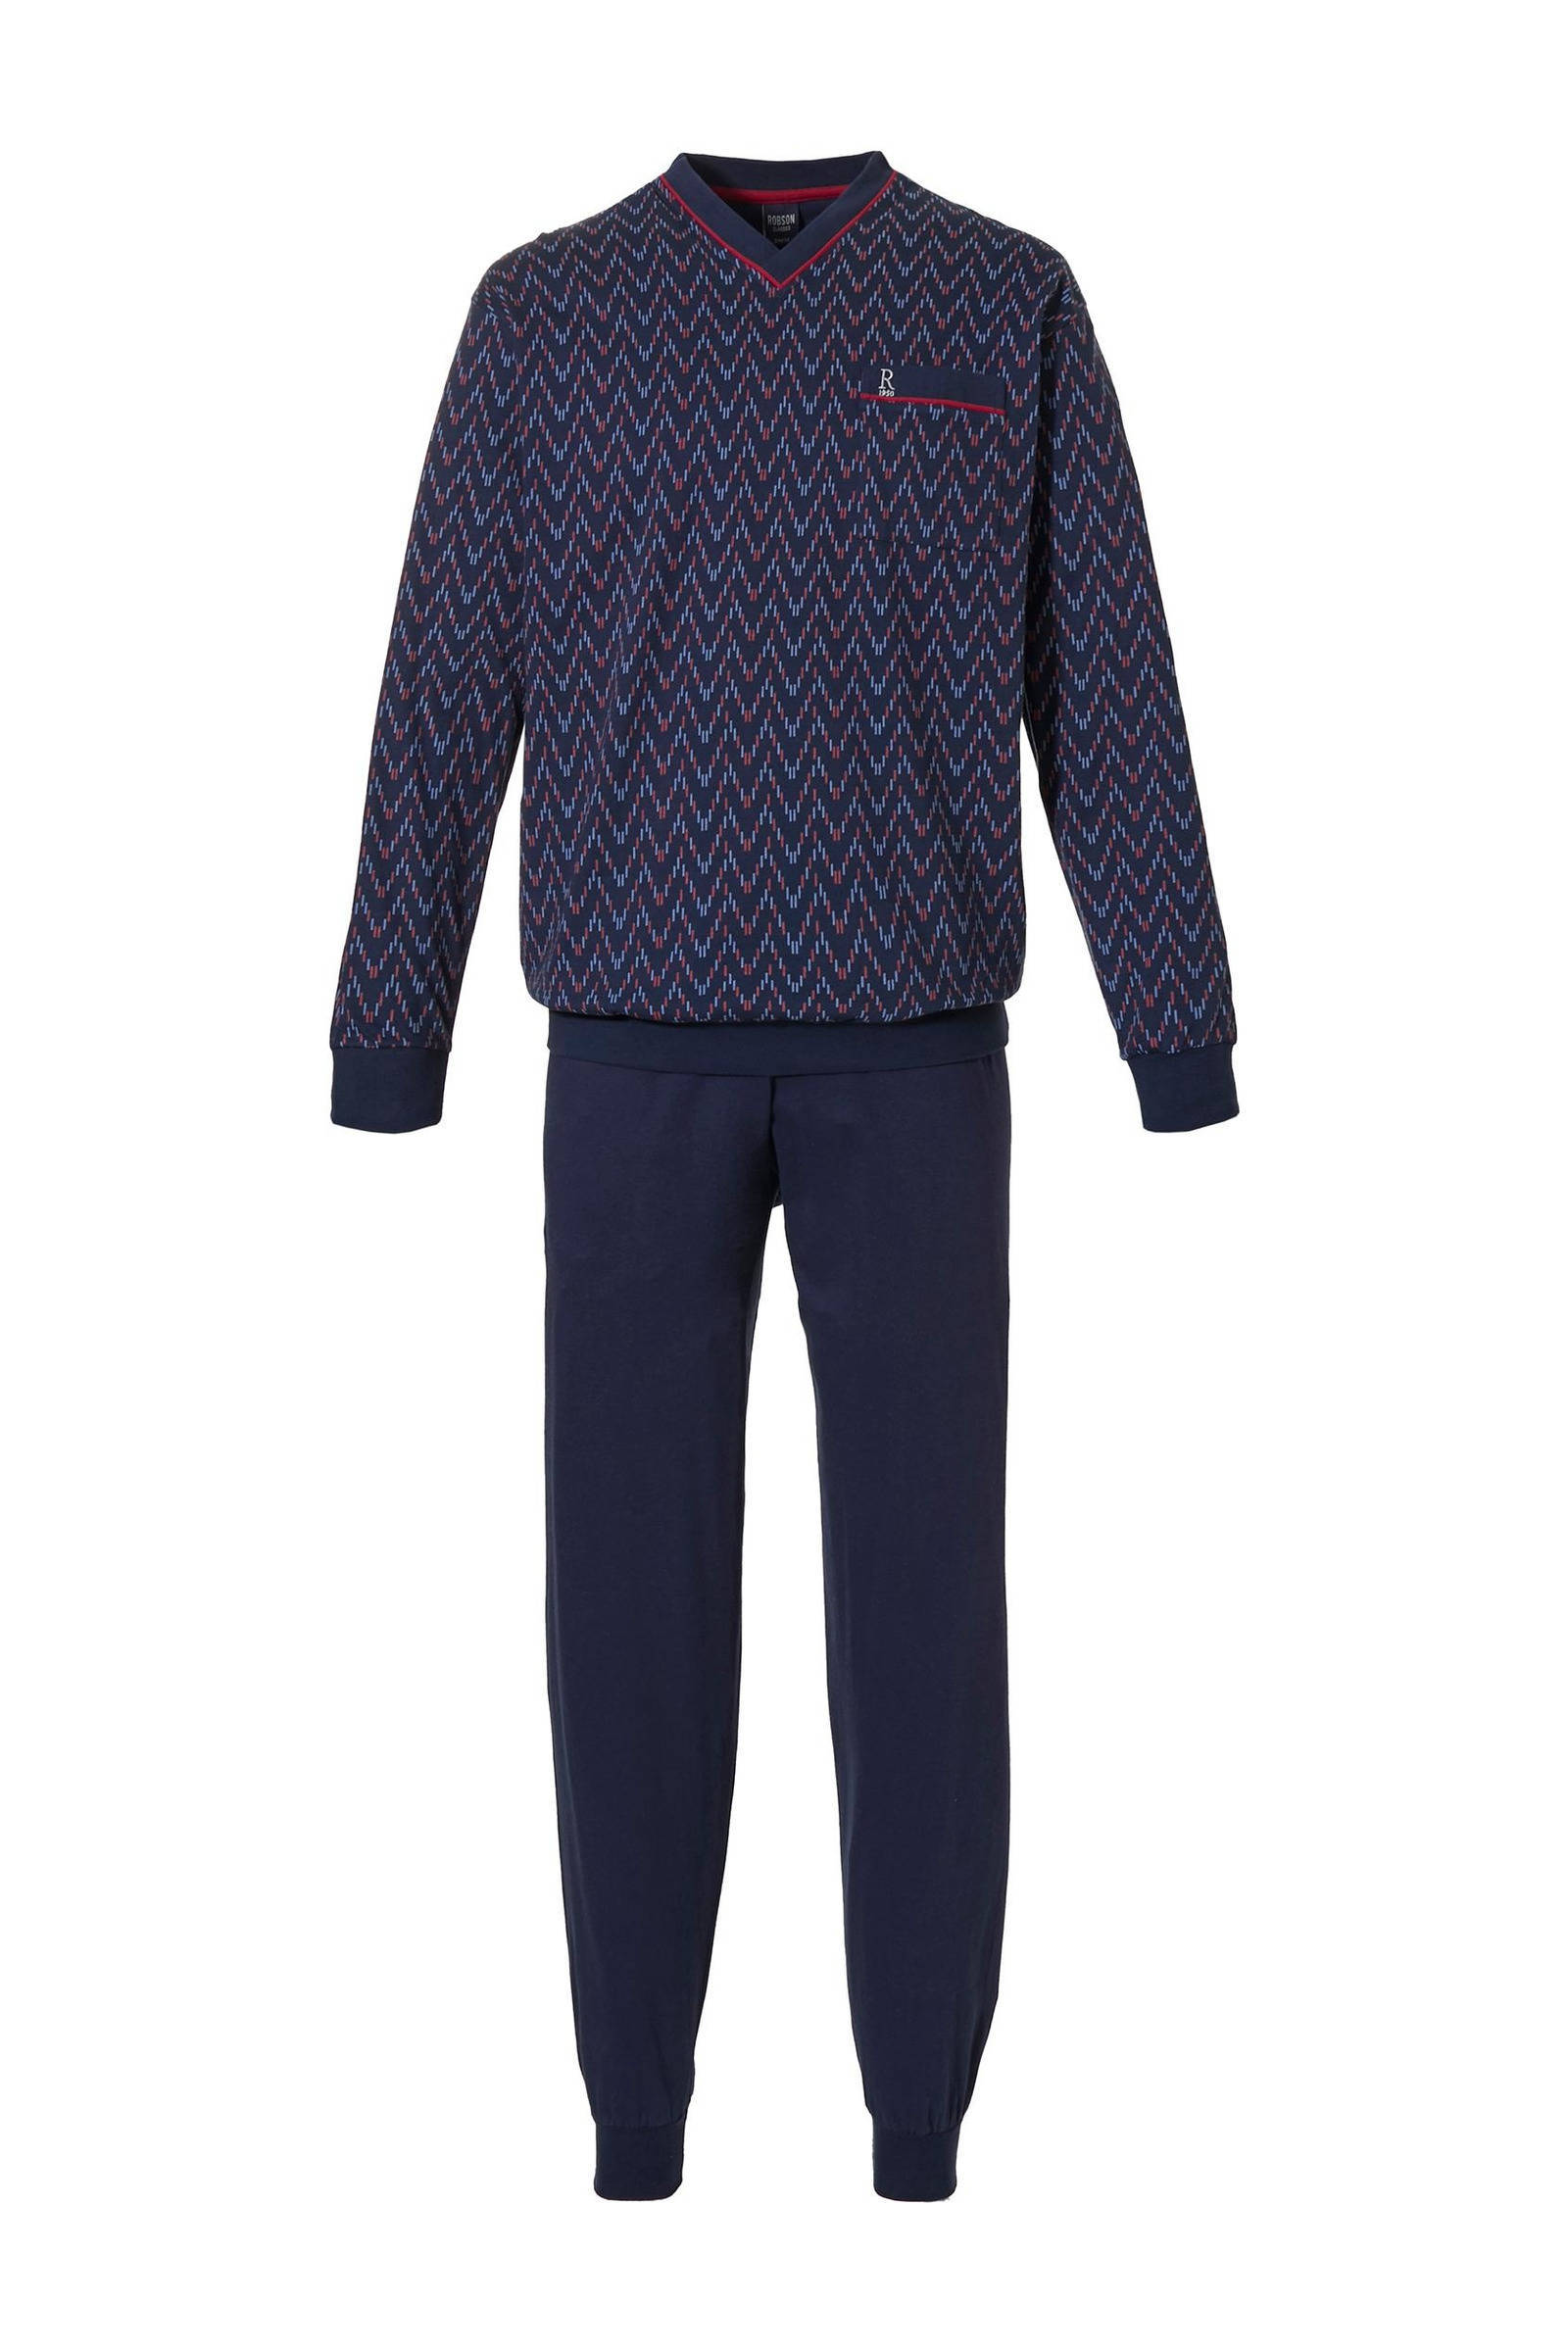 Robson Heren pyjama 27212 702 2 Blauw XXL/56 online kopen